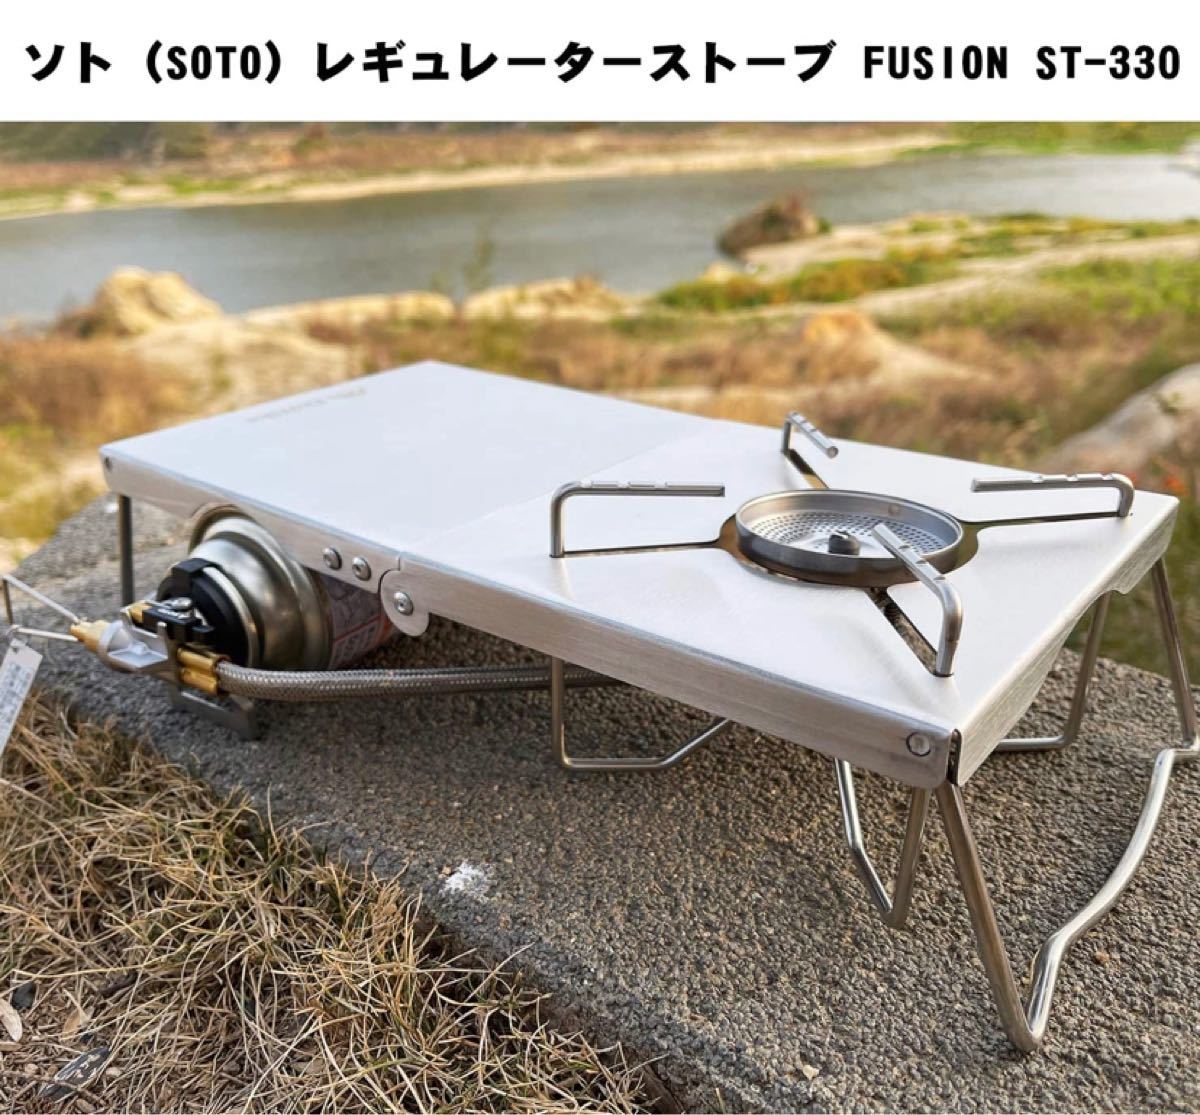 Enhike 遮熱テーブル　遮熱板　各種シングルバーナー向け　st310 st330 iwatani soto 焚き火テーブル 